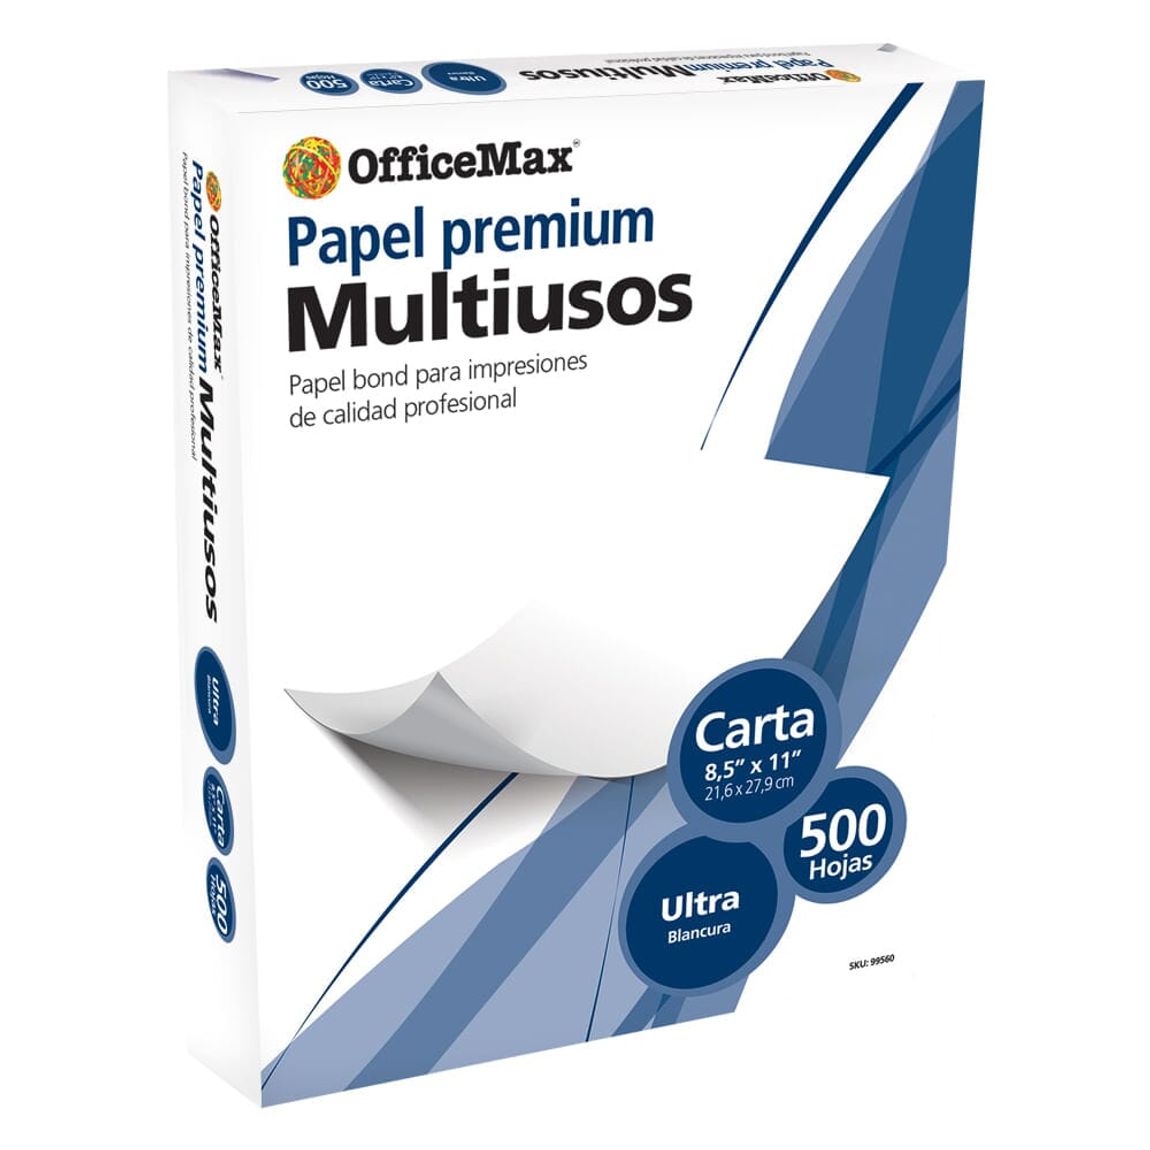 Maestro Señora Una vez más Paquete de Hojas Tamaño Carta OfficeMax Premium Ultra Blancura 500 hojas |  Cajas y Paquetes de Papel | OfficeMax - OfficeMax